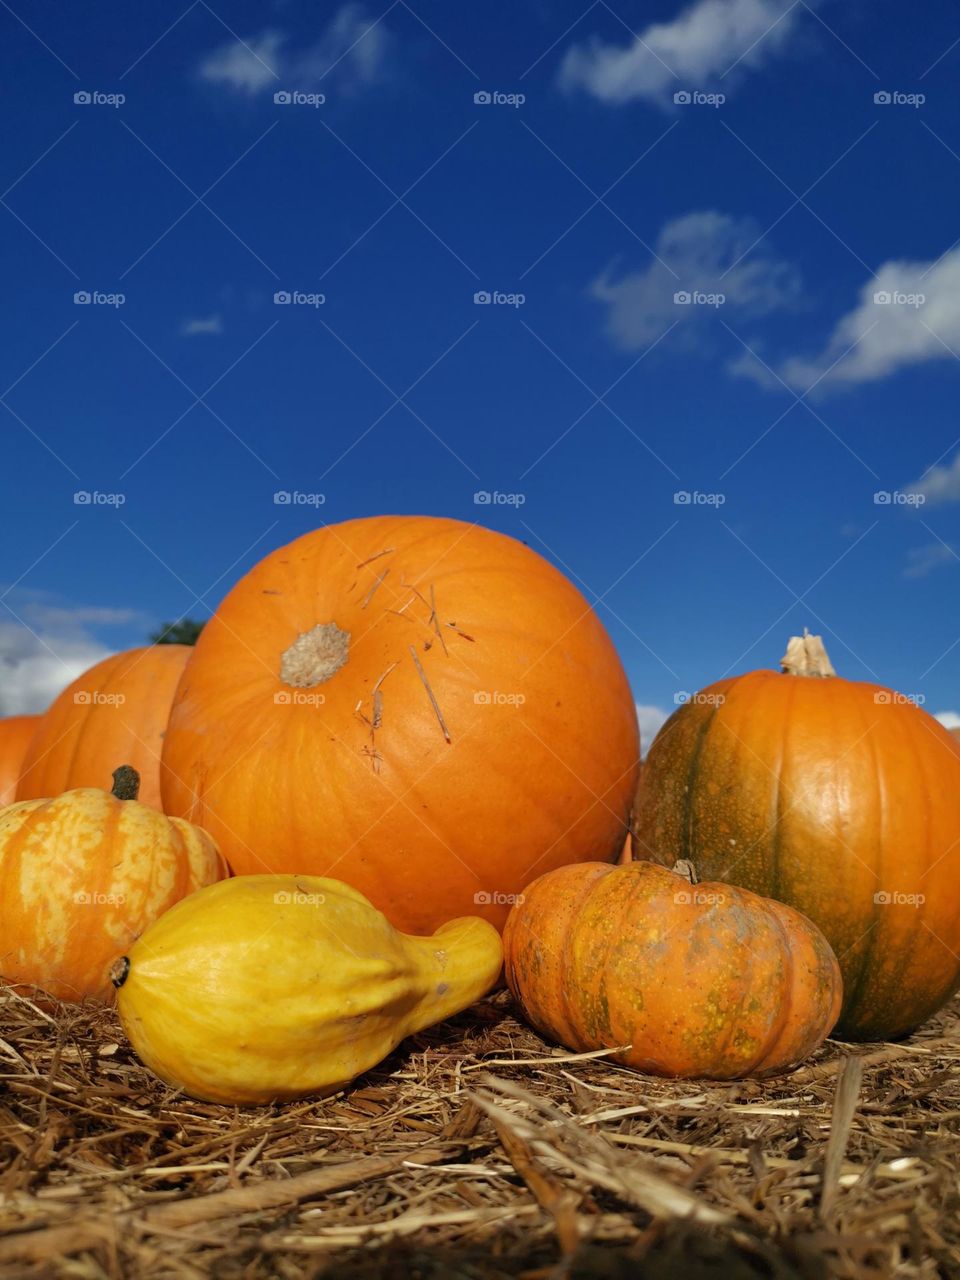 Autumn vibes. Pumpkin time. Before Halloween.